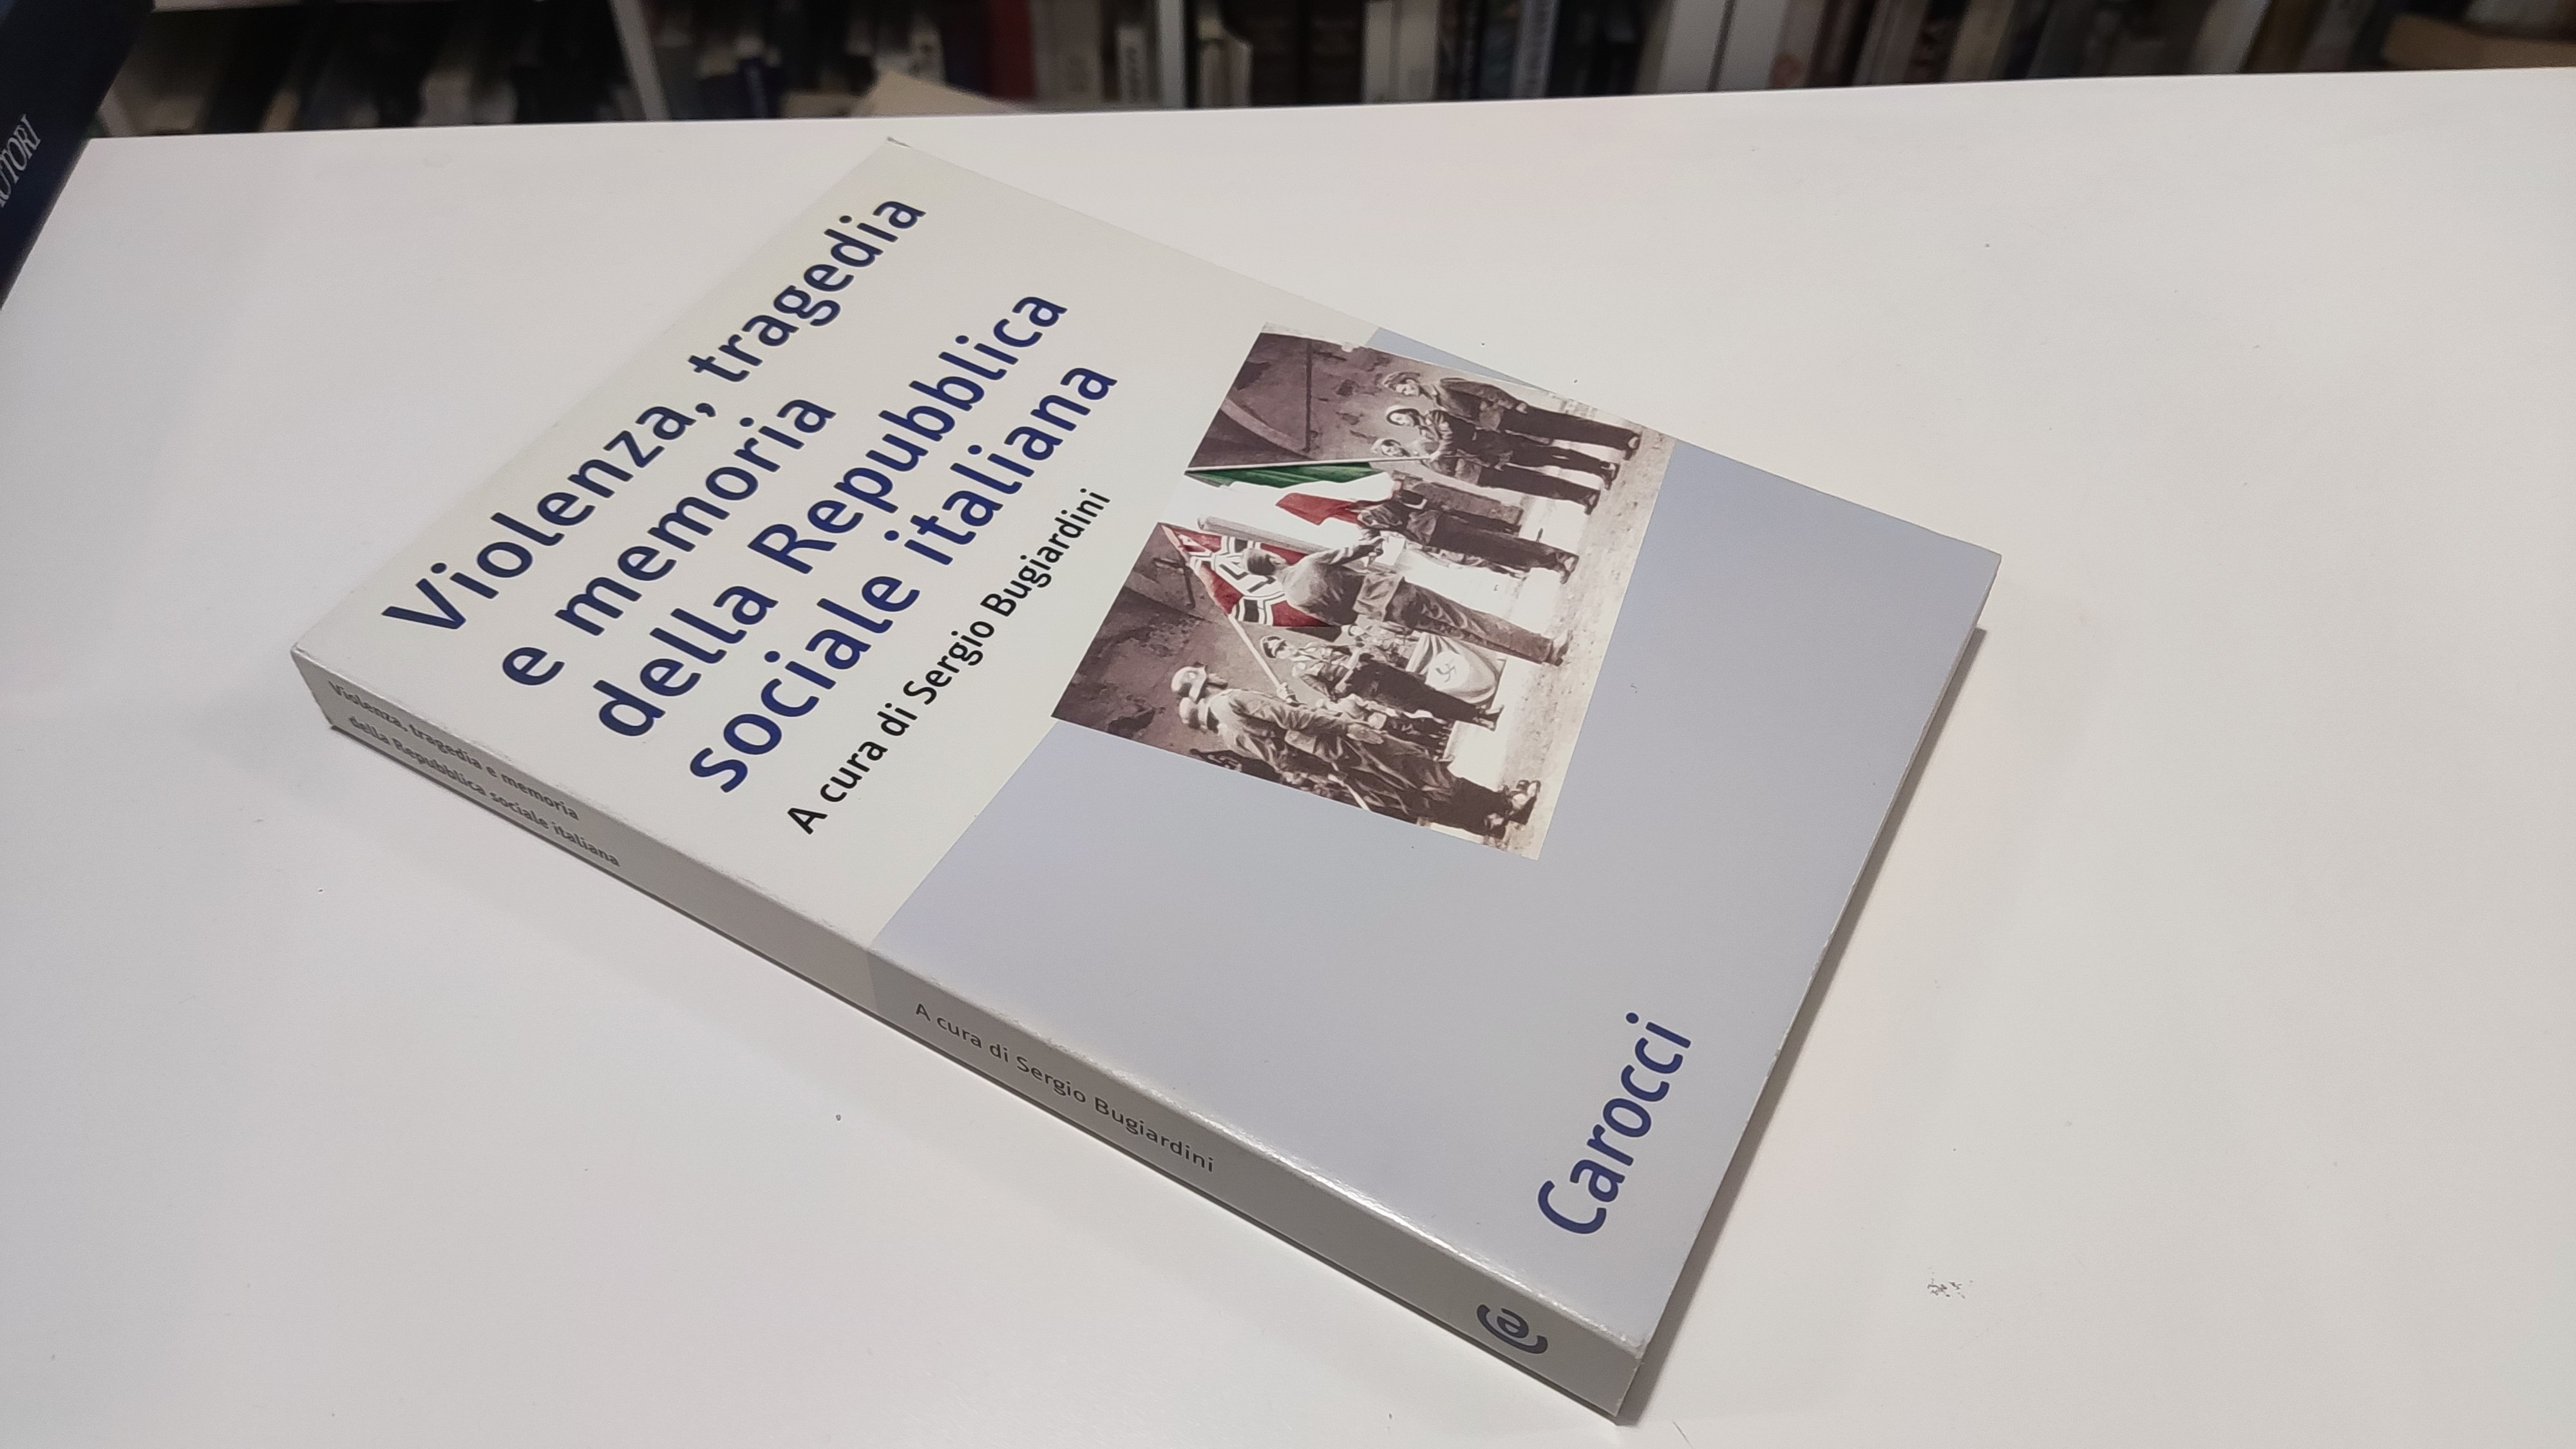 Violenza tragedia e memoria della Repubblica sociale italiana